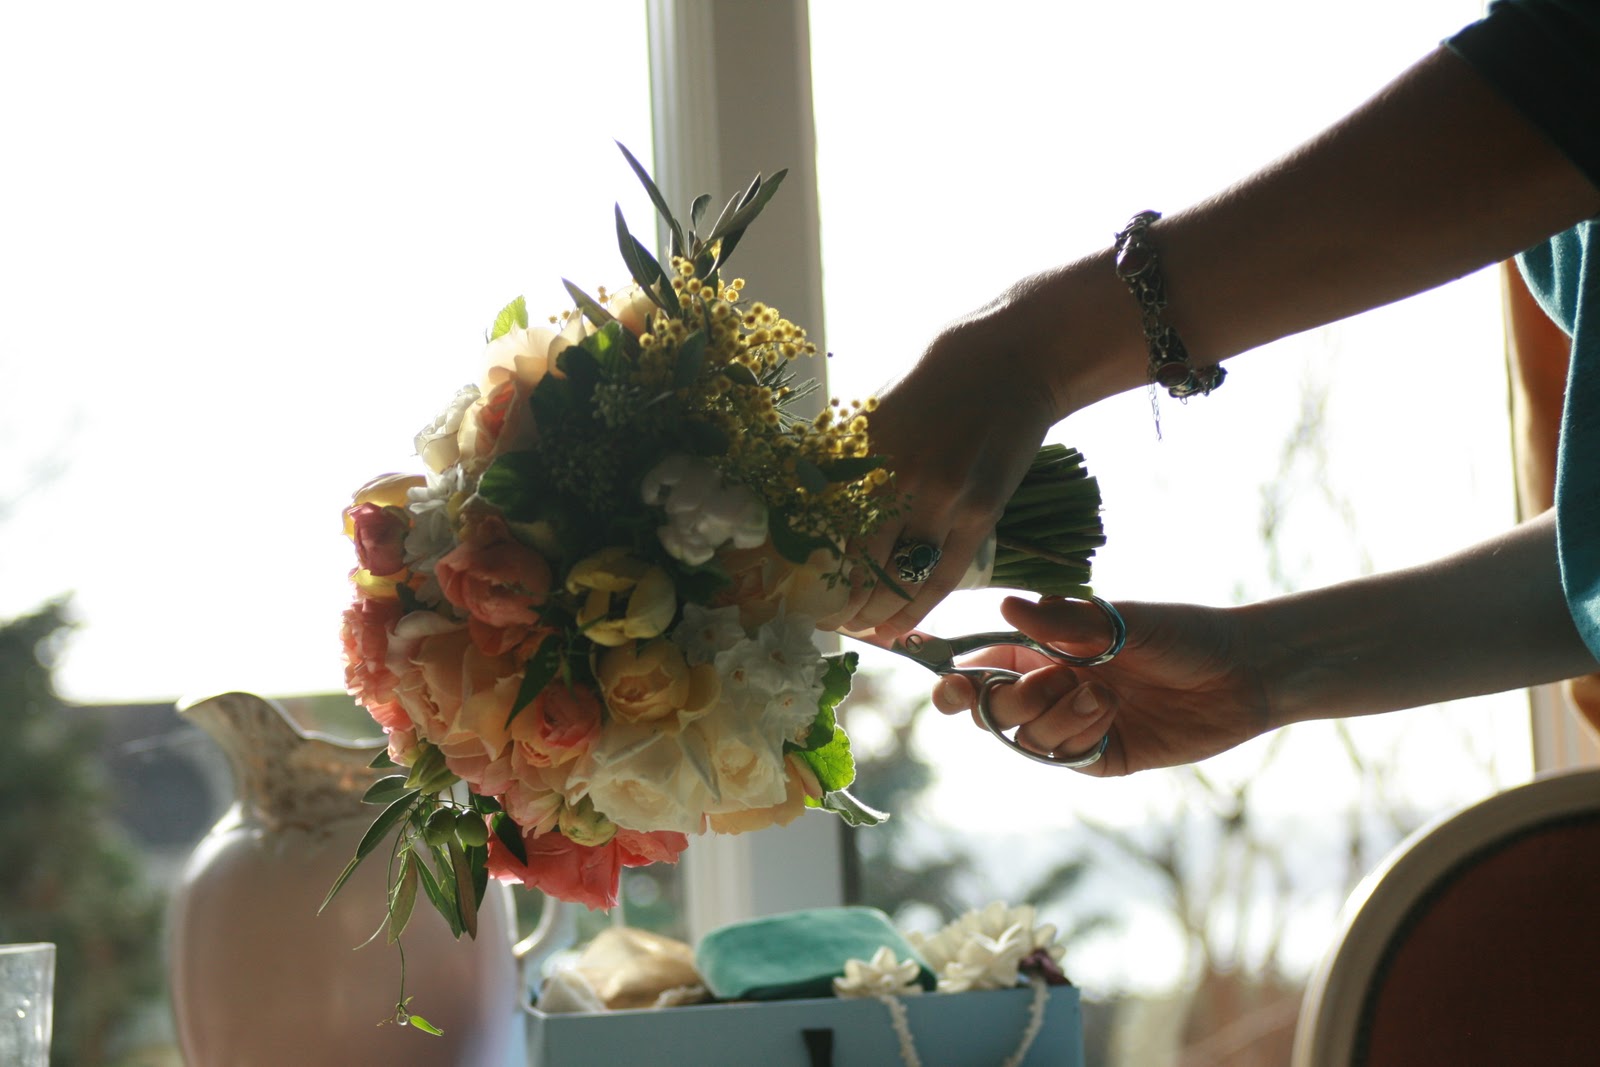 Erin Benzakein arranging a bouquet